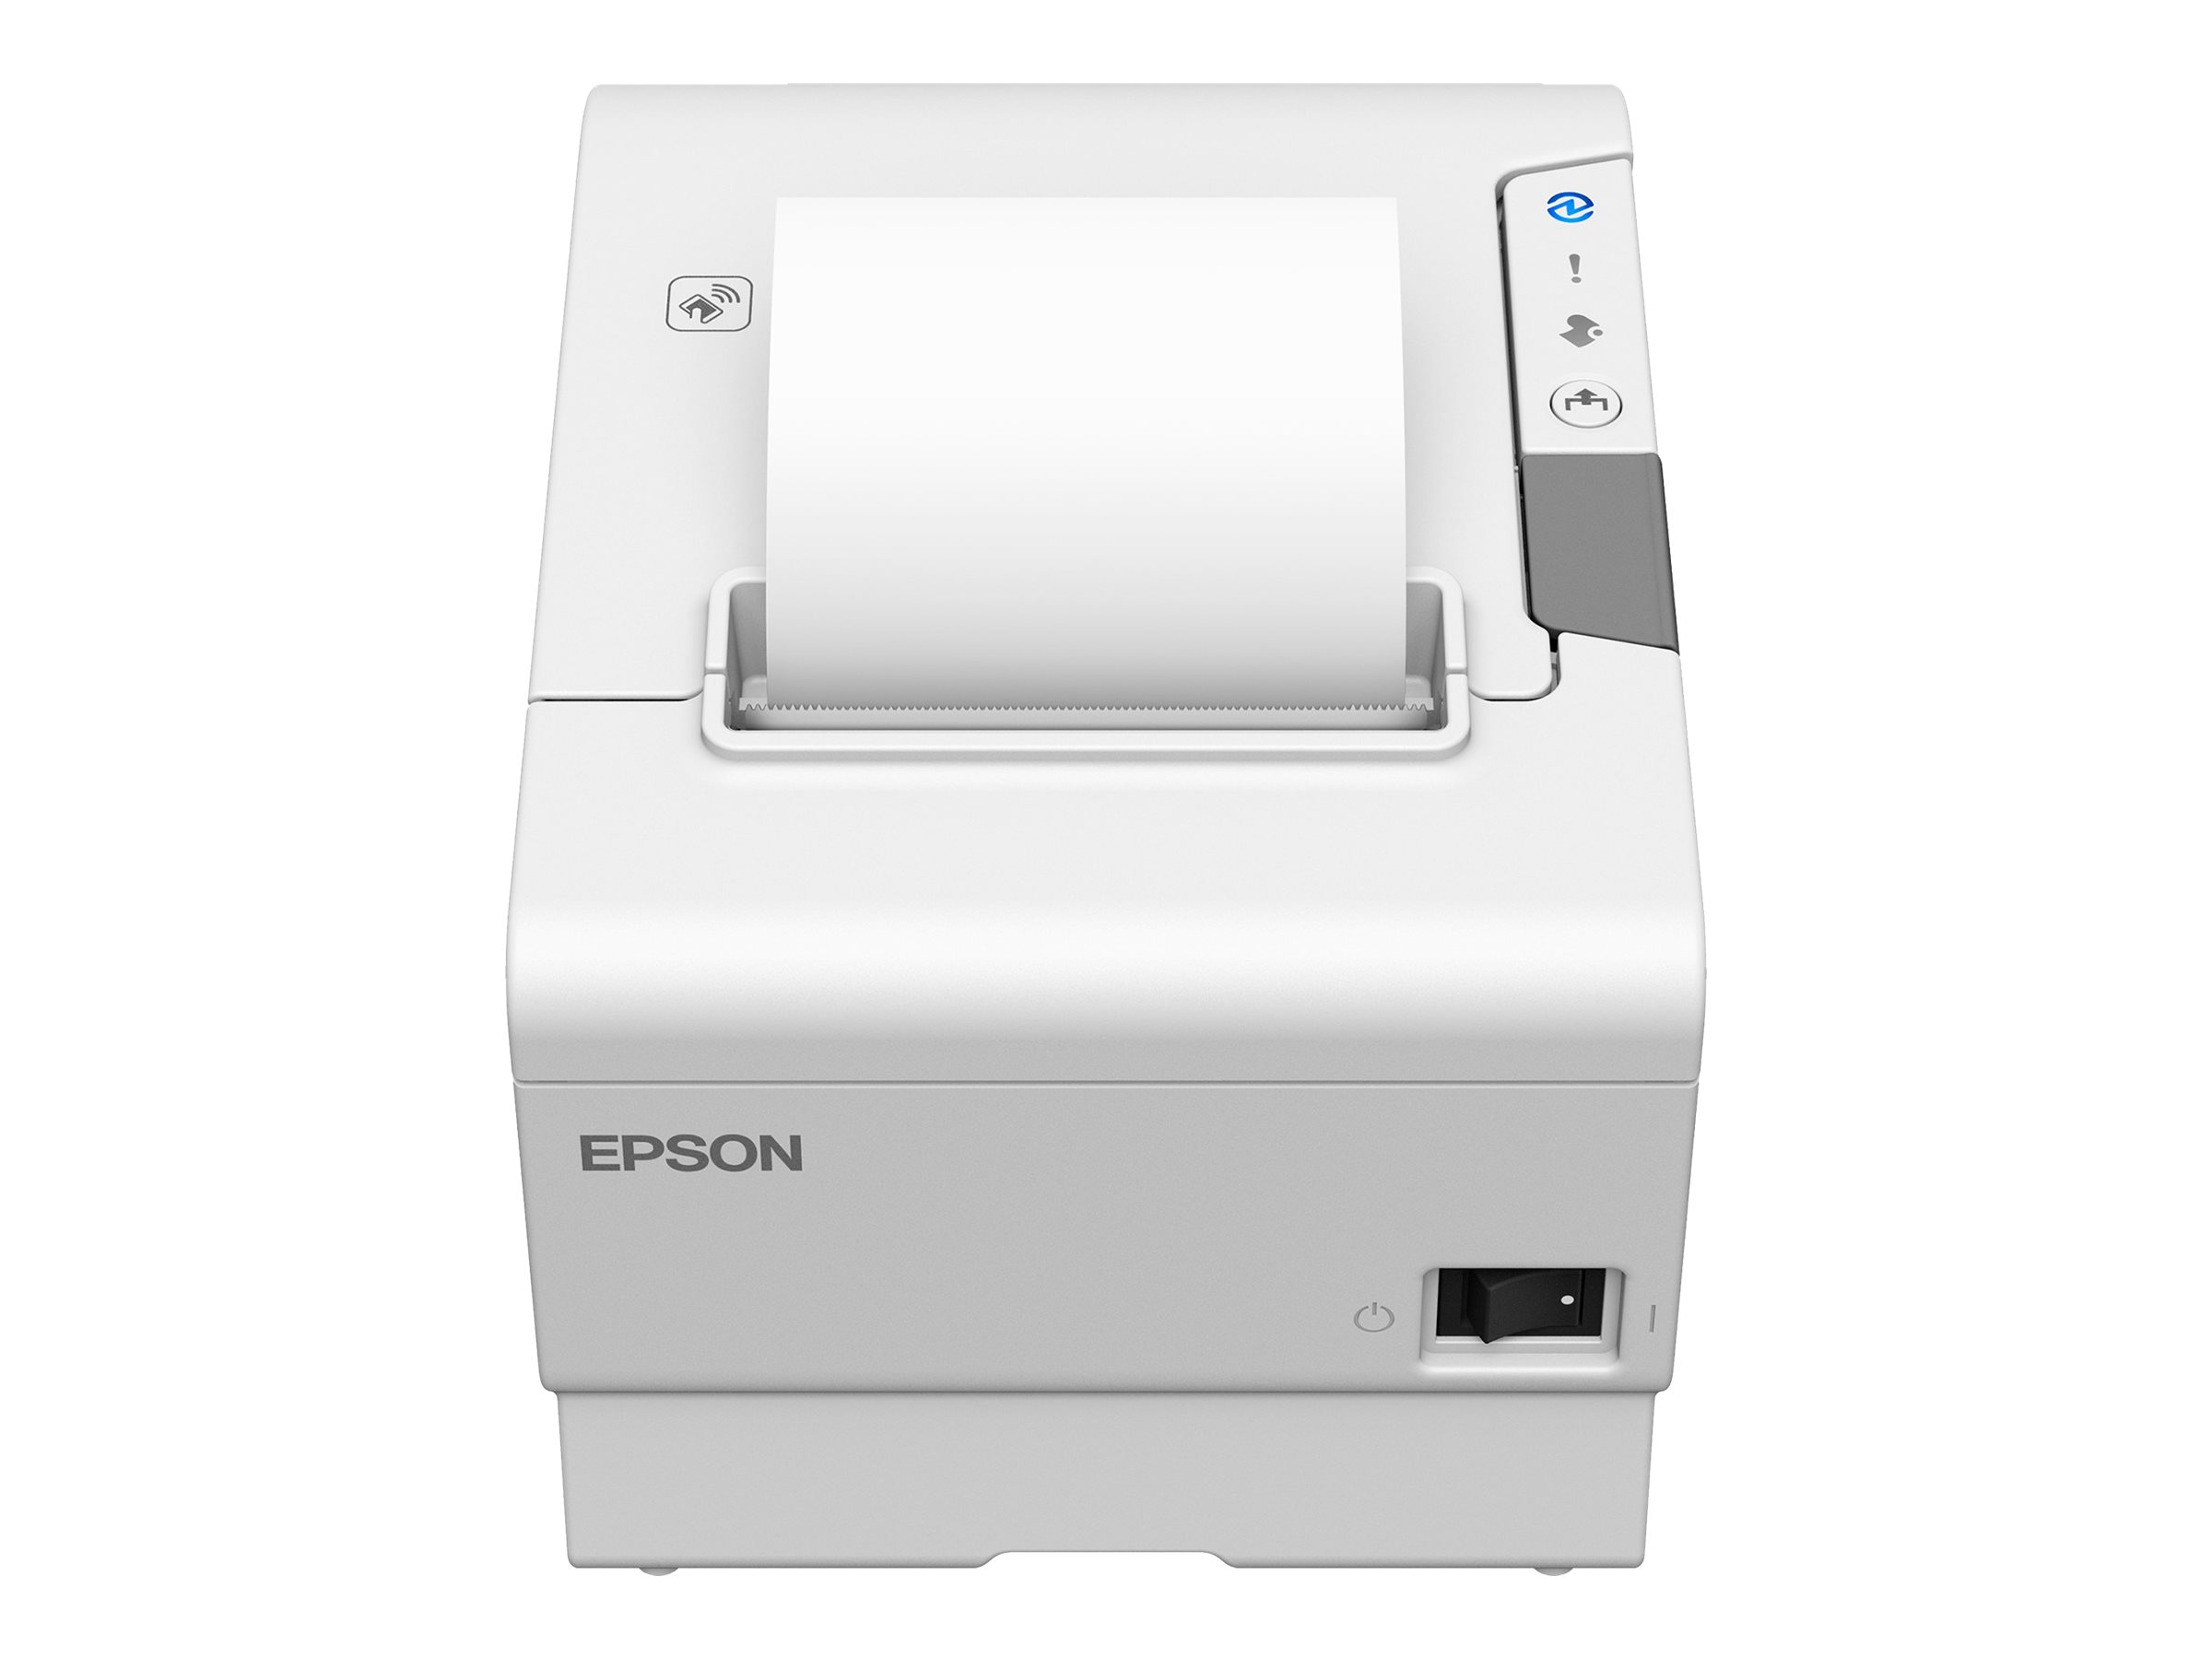 Epson TM T88VI - Imprimante de reçus - thermique en ligne - Rouleau (7,95 cm) - 180 x 180 ppp - jusqu'à 350 mm/sec - USB 2.0, LAN, série, NFC, hôte USB 2.0 - outil de coupe - blanc - C31CE94102 - Imprimantes de reçus POS